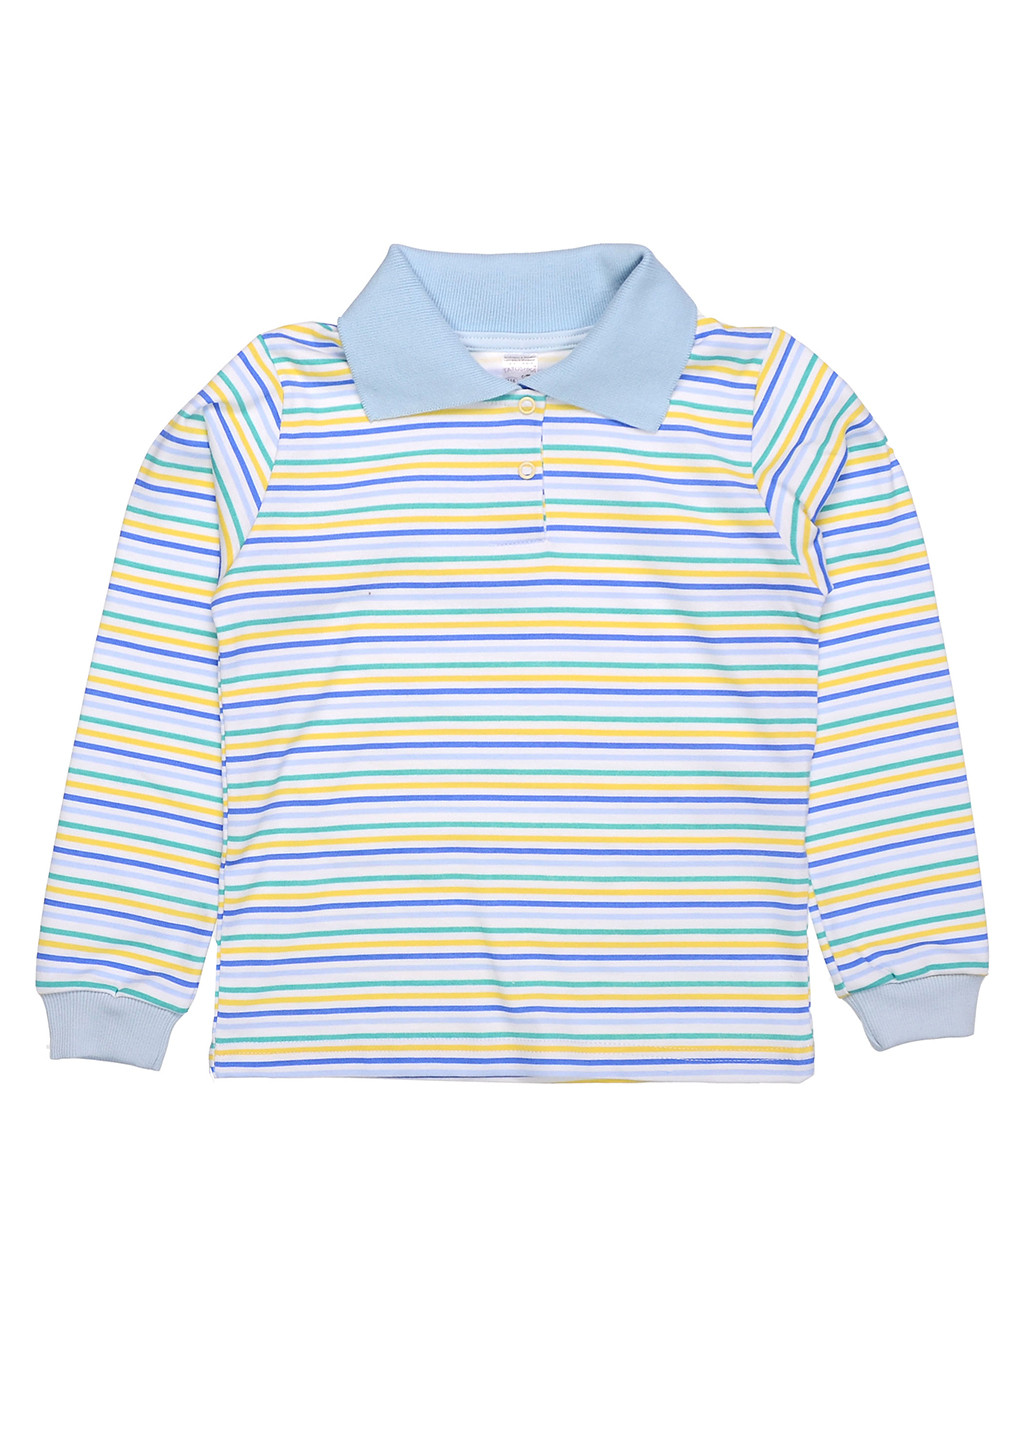 Голубой детская футболка-поло для мальчика Татошка в полоску